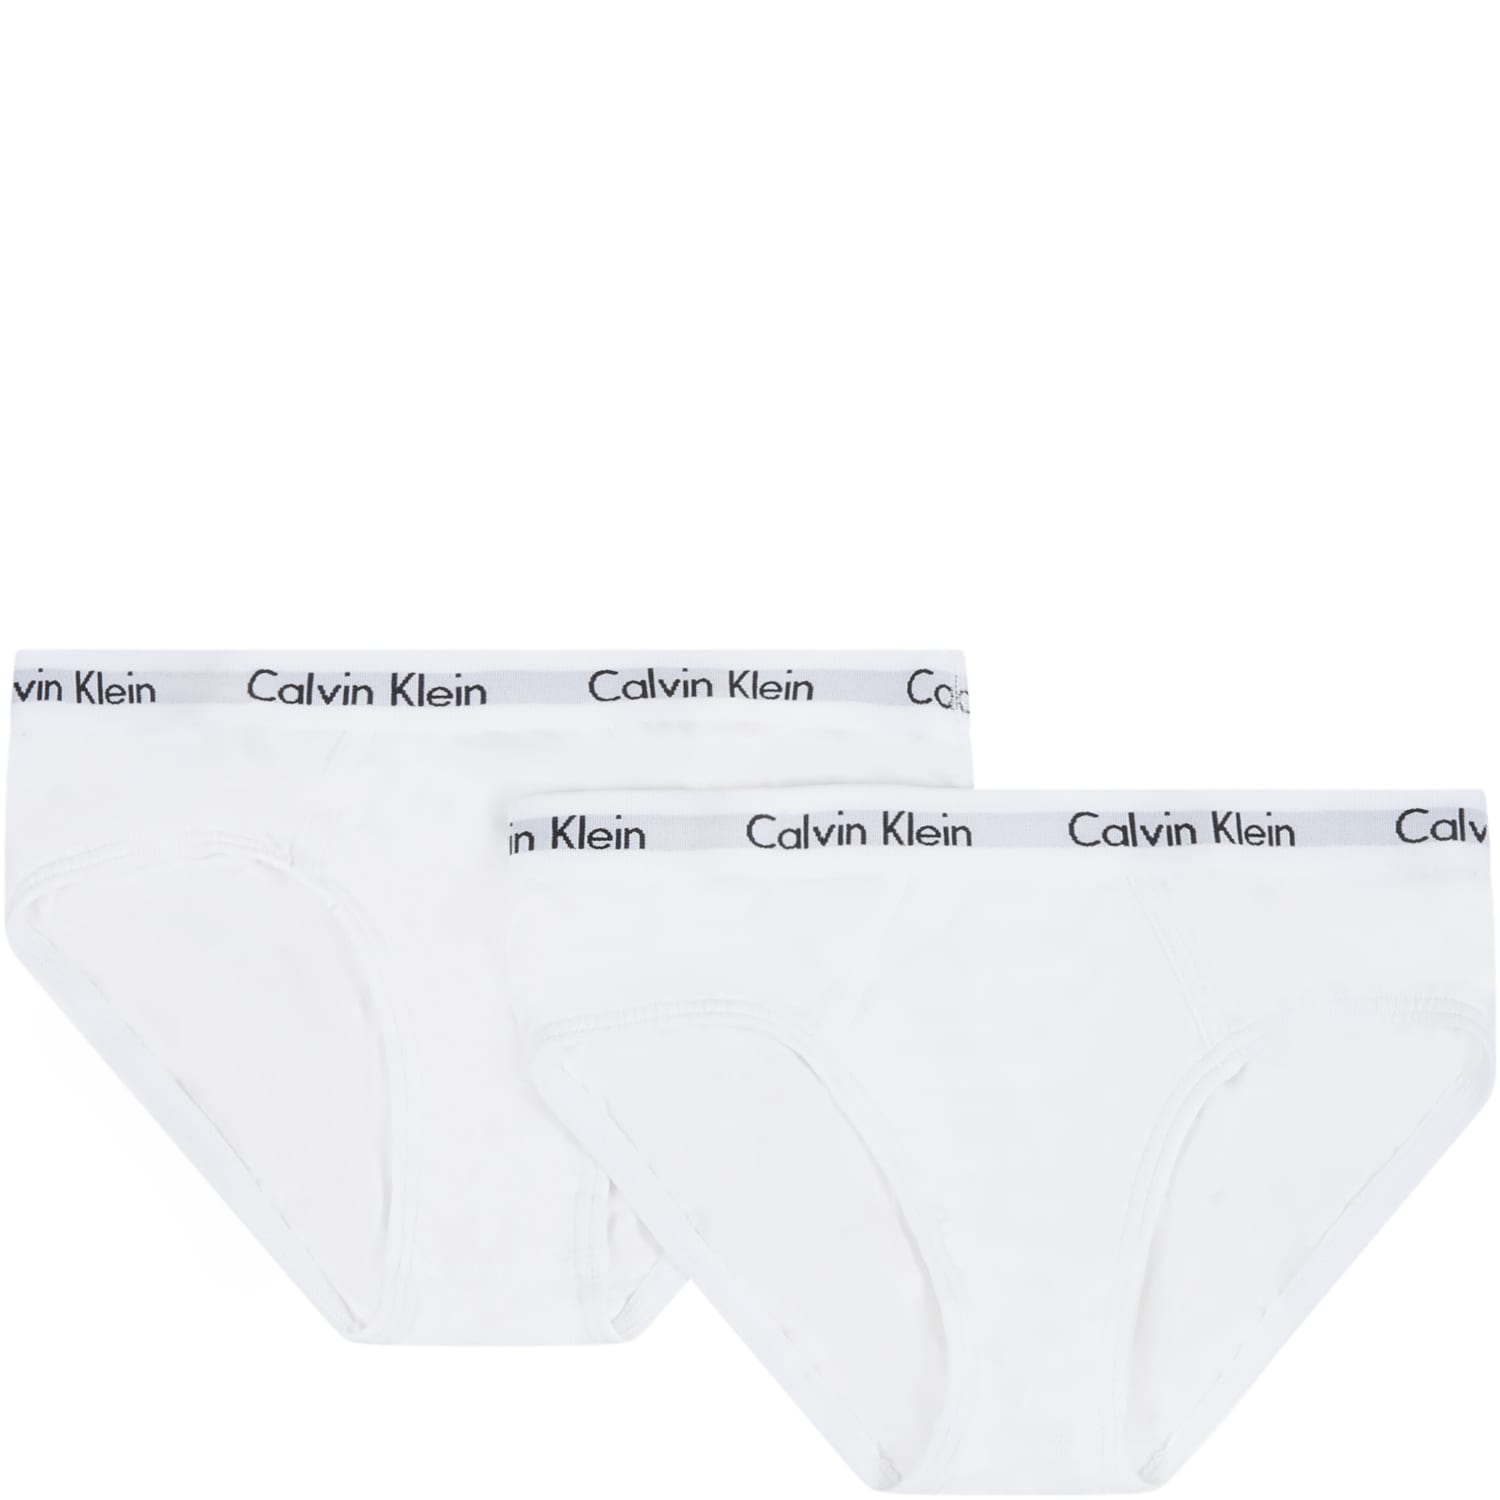 Calvin Klein White Set For Boy With Logos